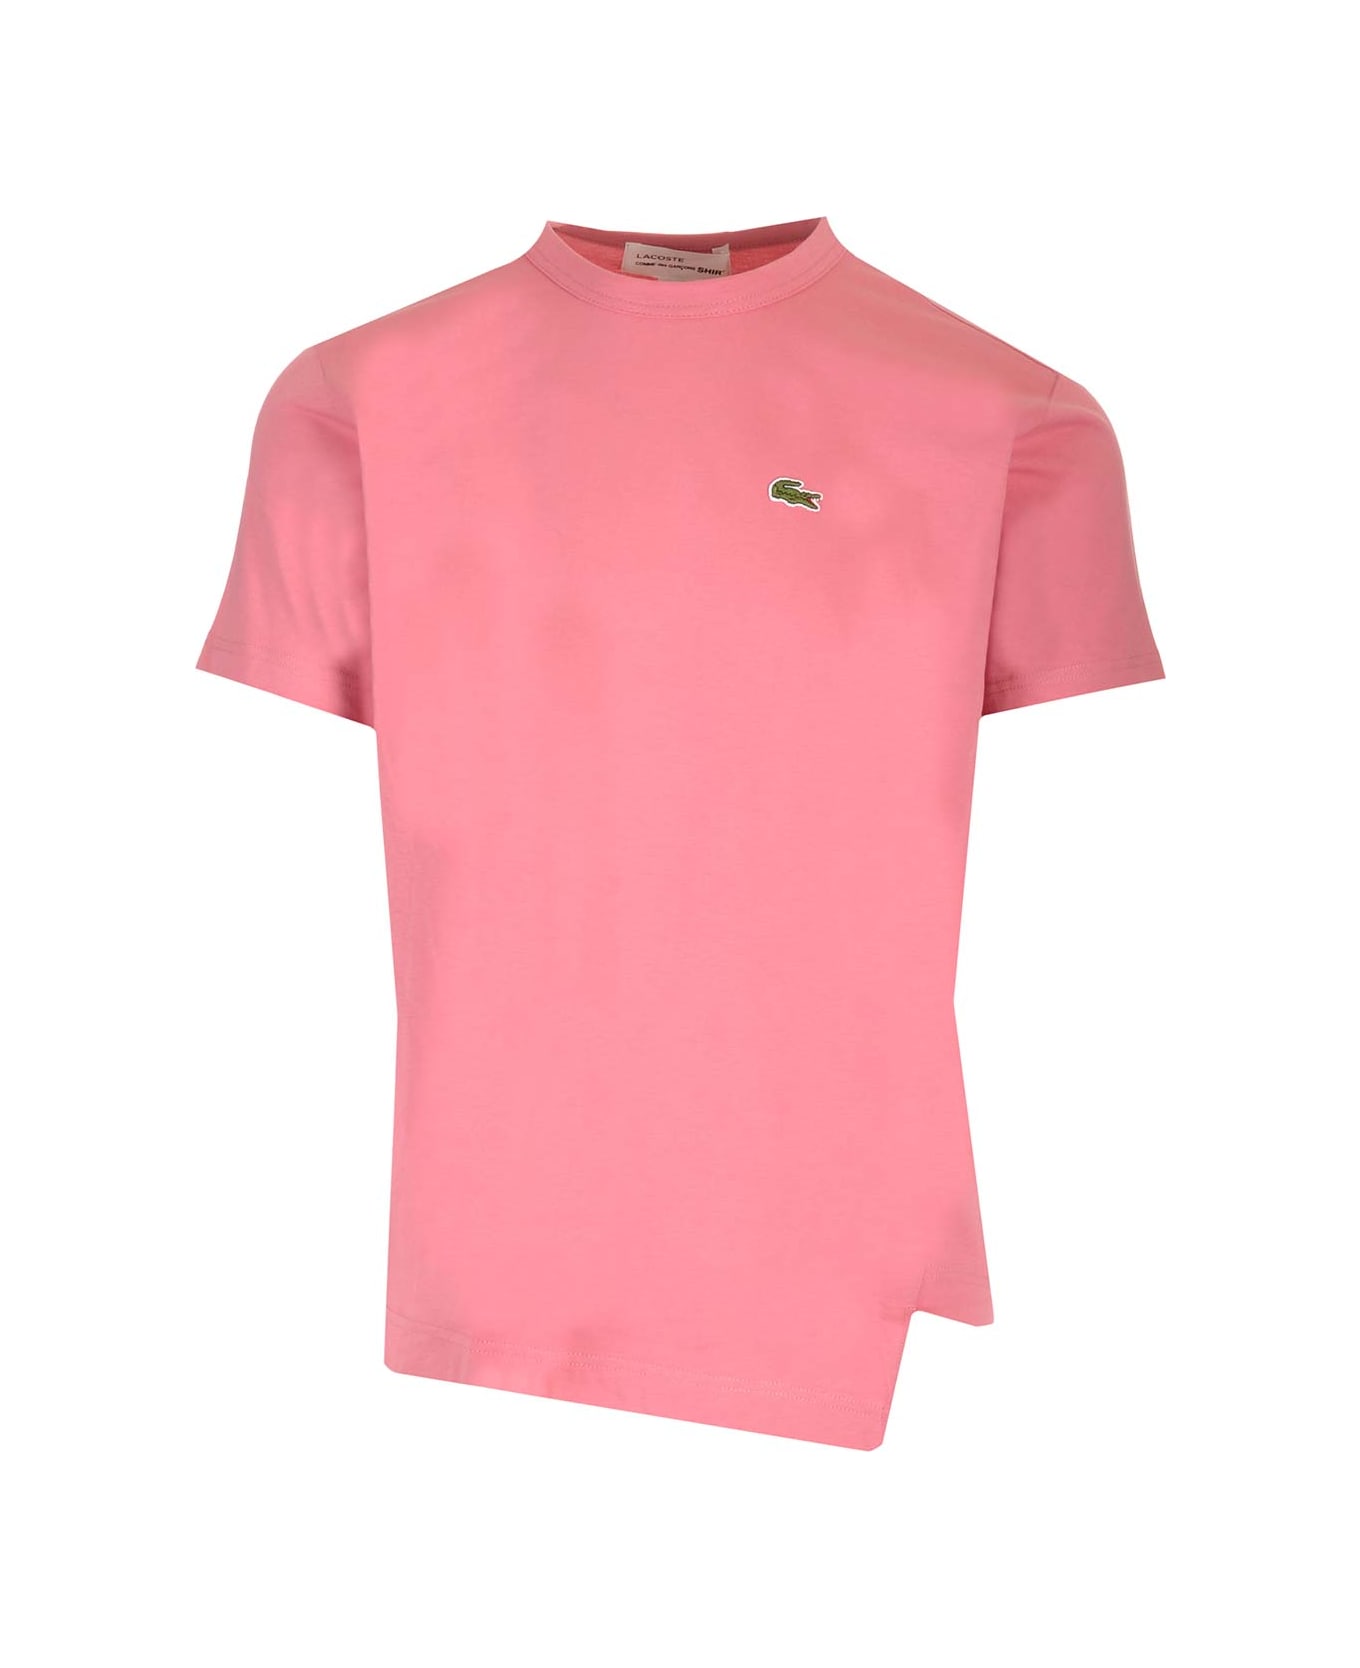 Comme des Garçons Pink Asymmetric T-shirt For La Coste - PINK